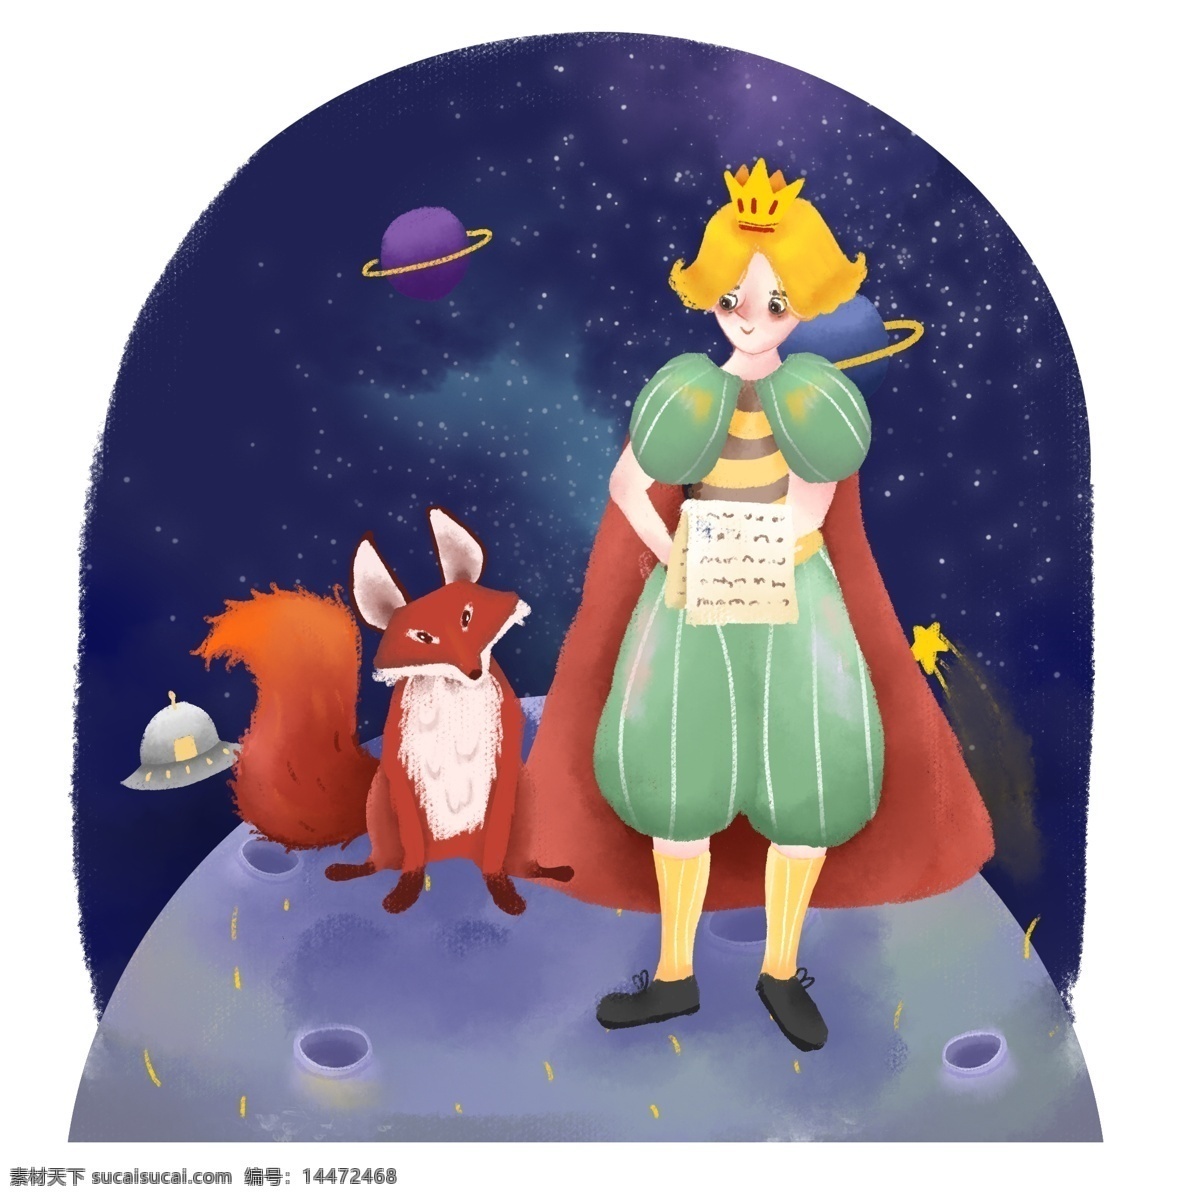 西方 王子 手绘 卡通 可爱 治愈 插画 狐狸 玫瑰 星球 卡通可爱 男孩 夜晚 西方王子 动物狐狸